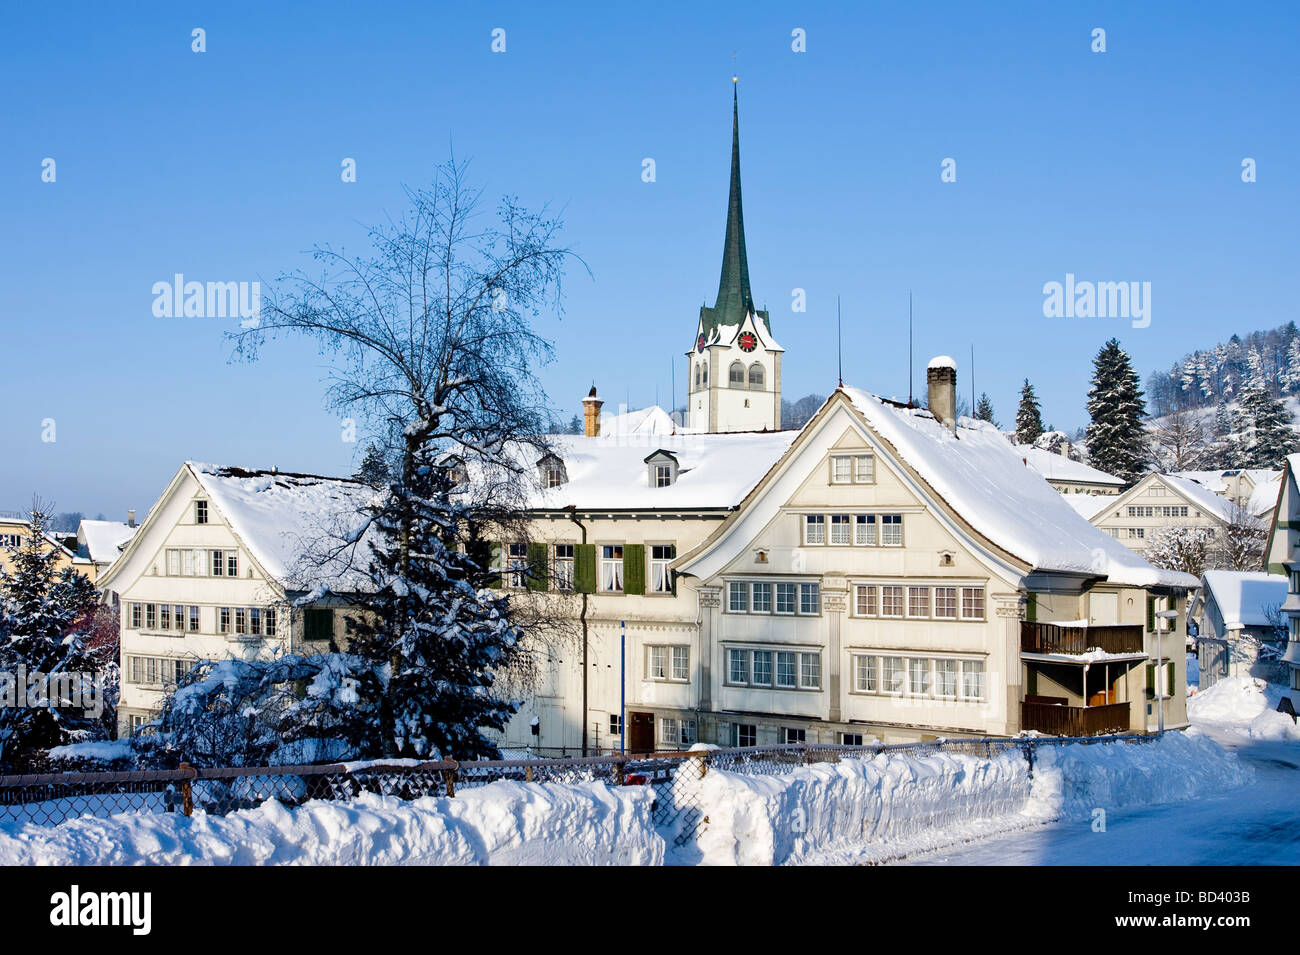 Winter view of Teufen, Appenzell Ausserrhoden village, Switzerland Stock Photo